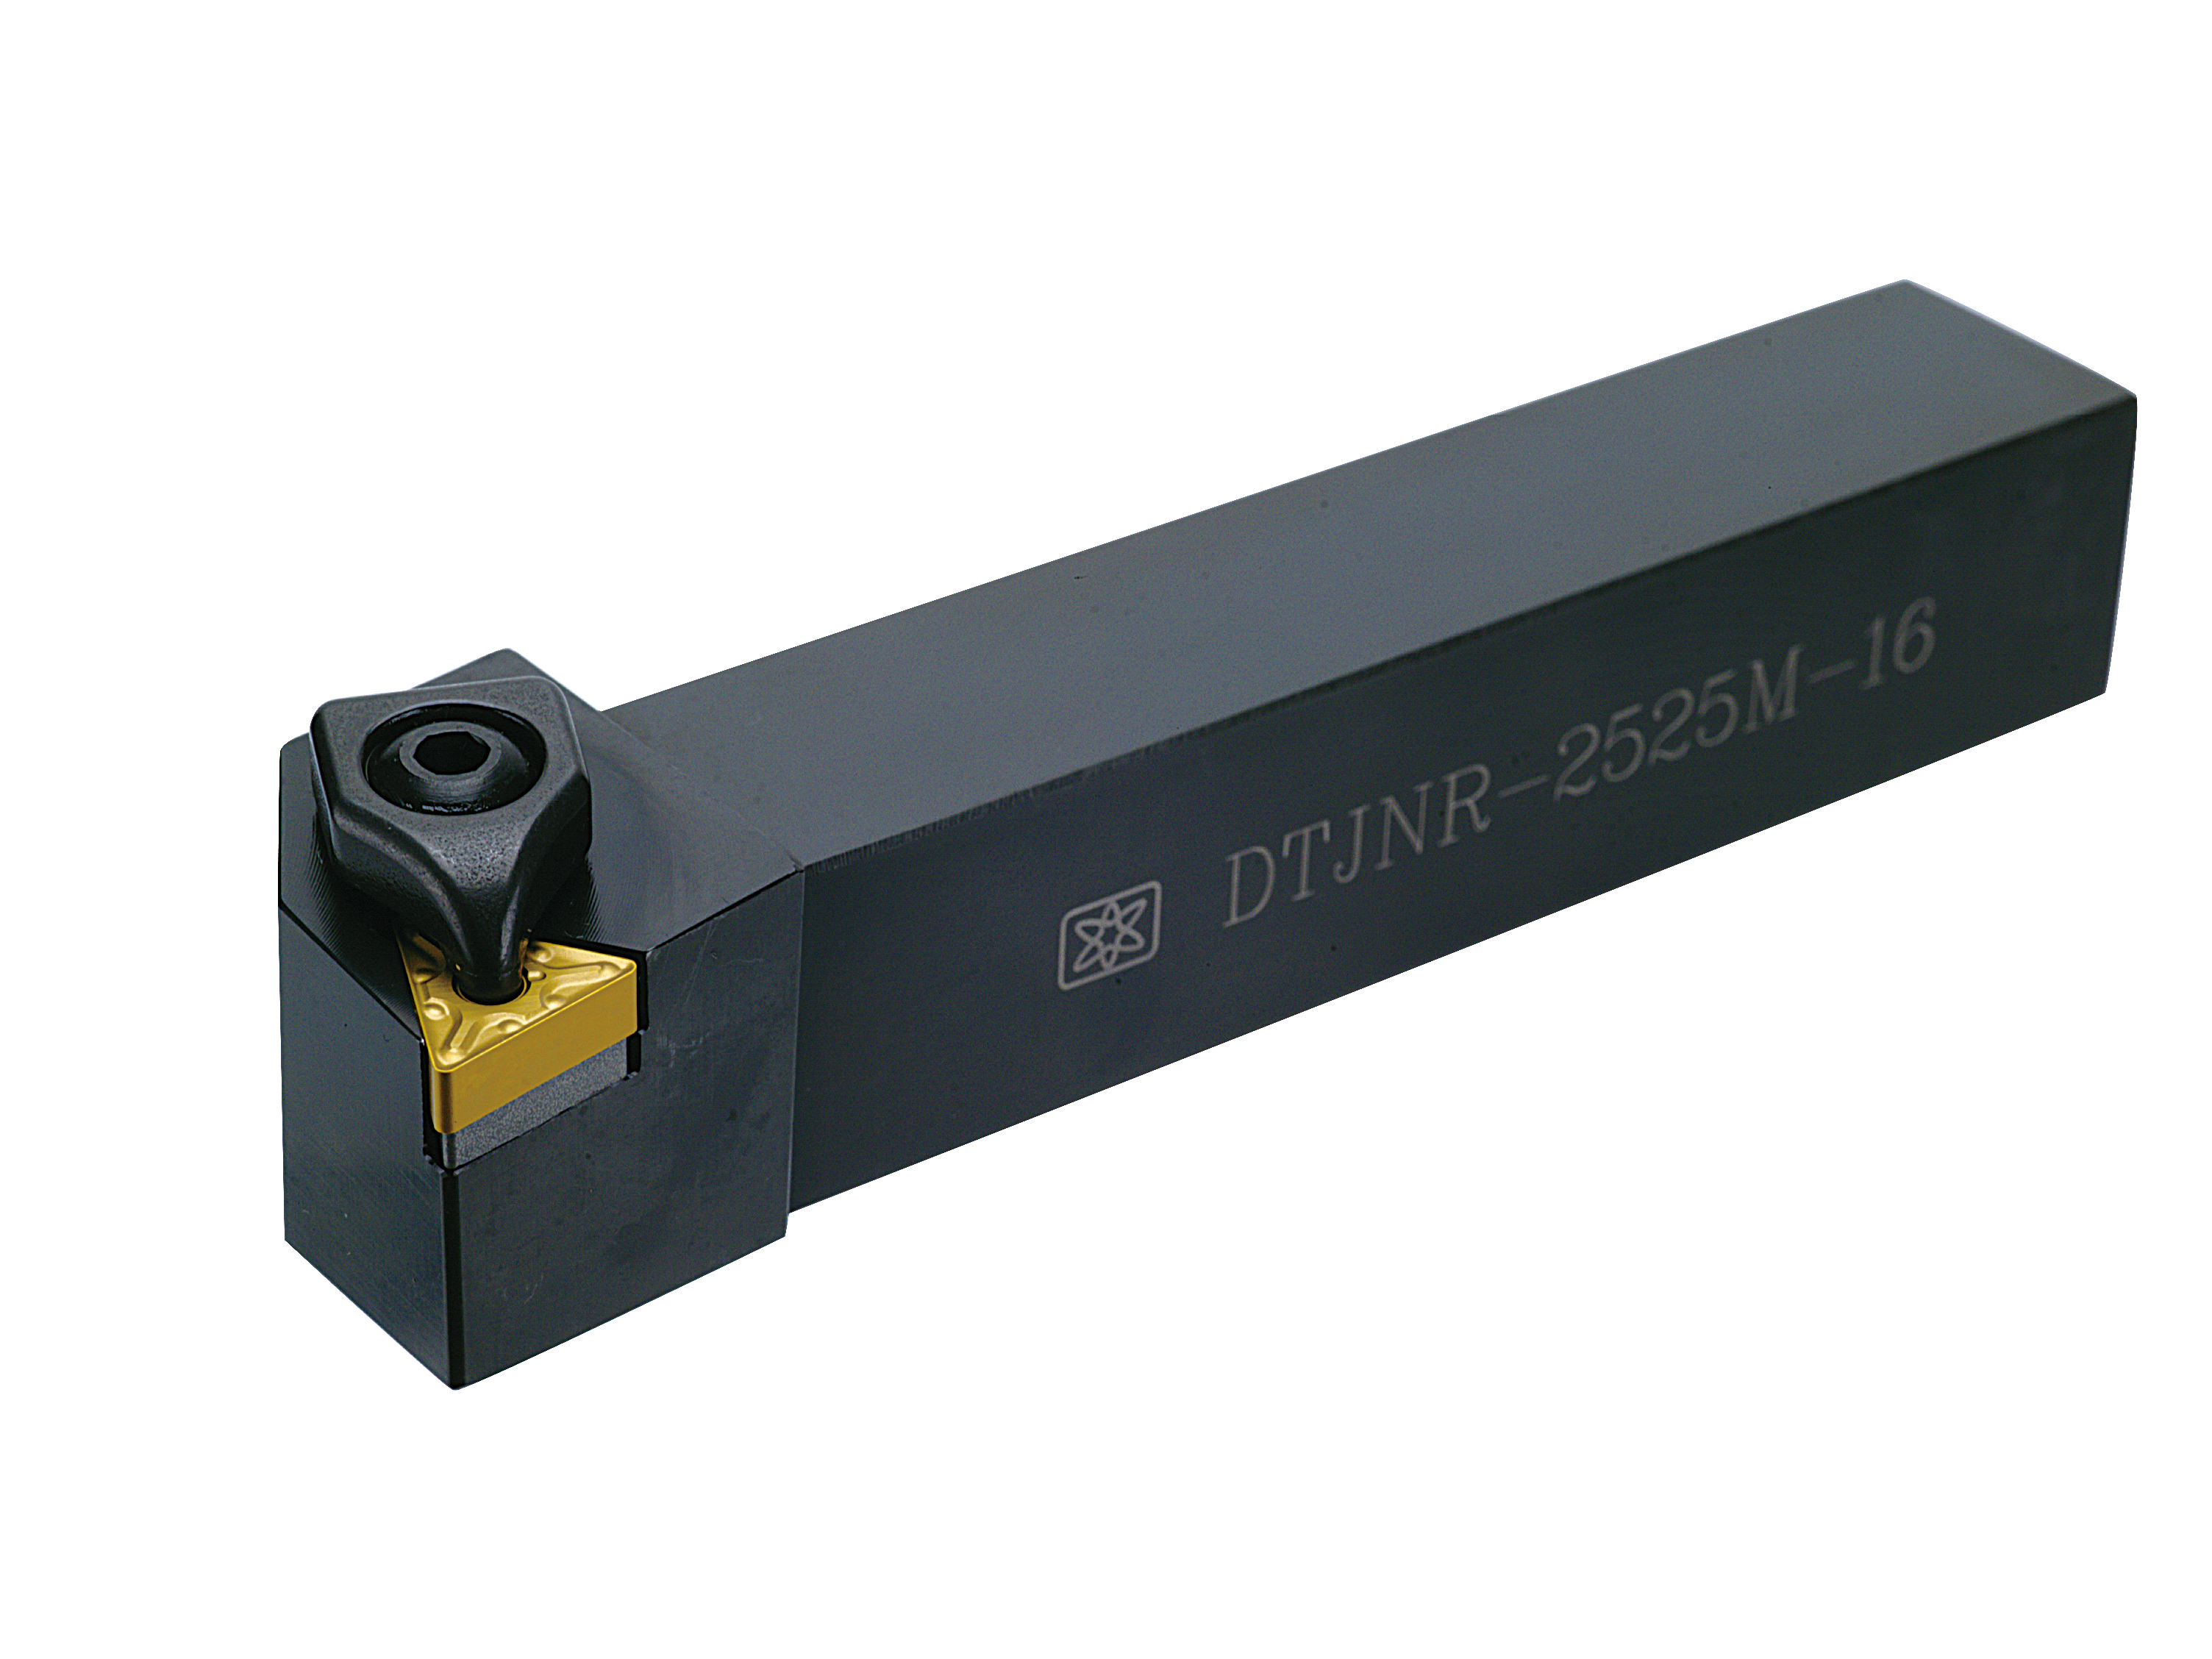 Catalog|DTJNR (TNMG1604) External Turning Tool Holder